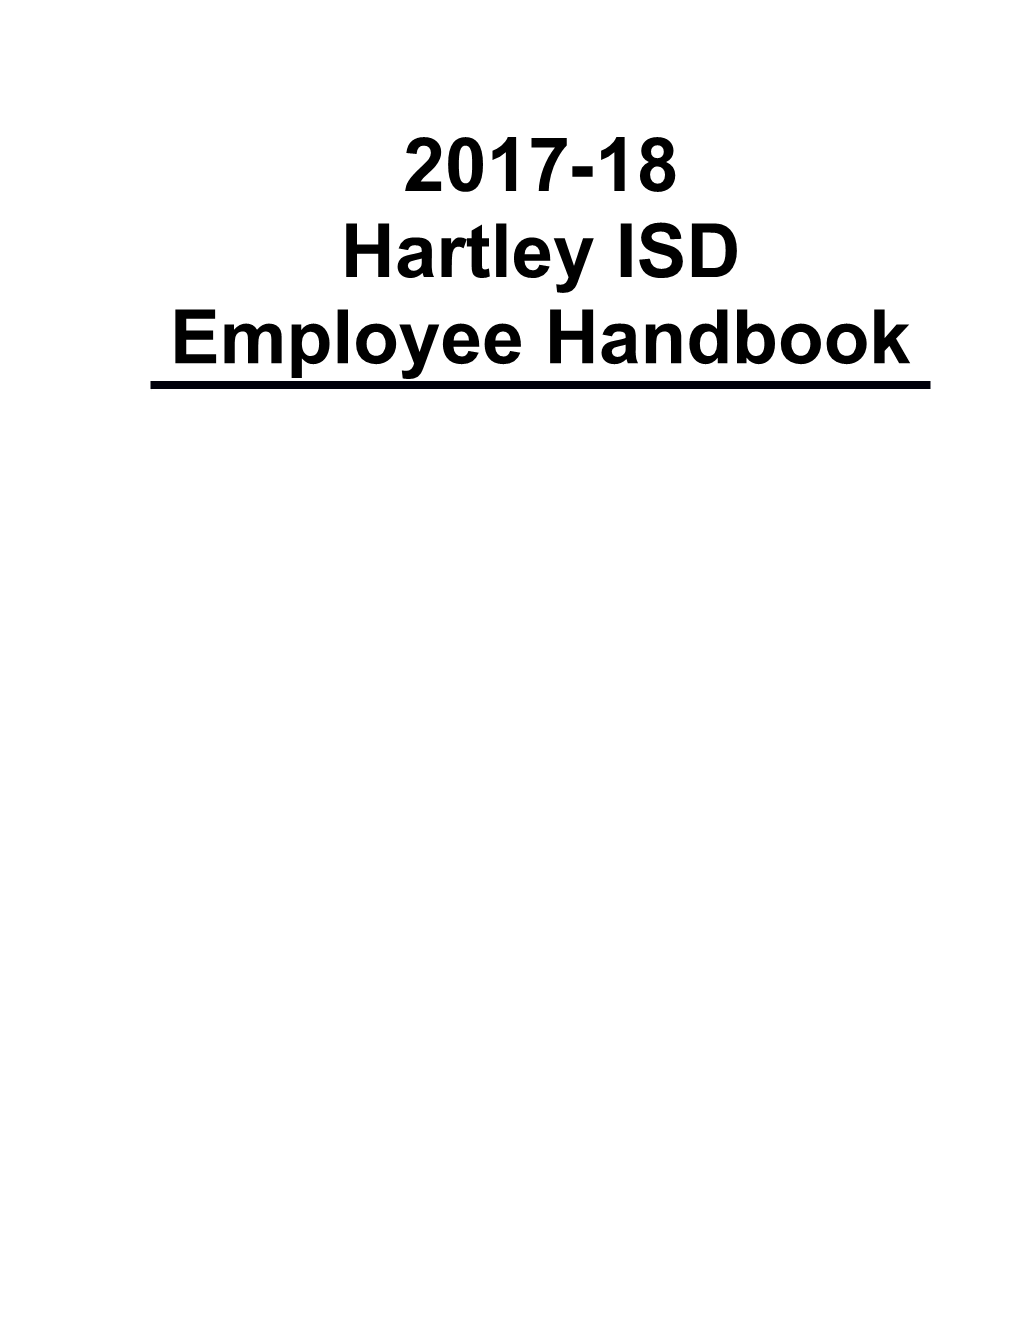 2010 Editable Model Employee Handbook s2